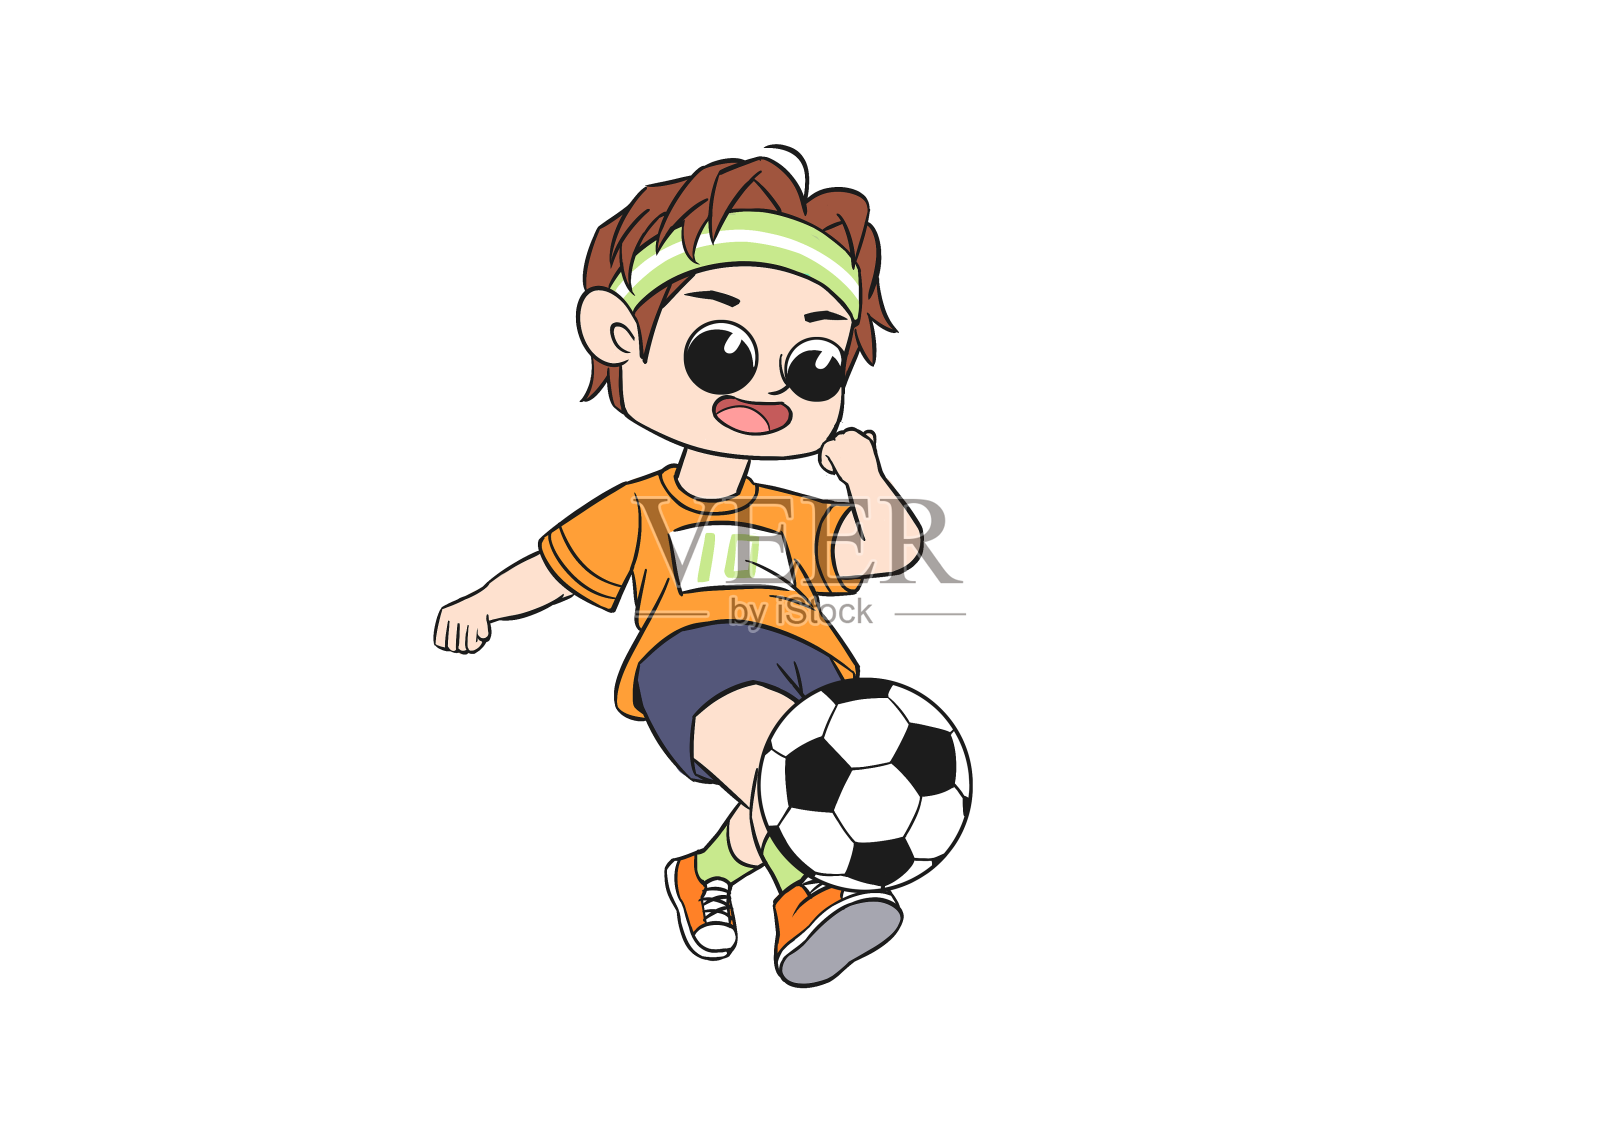 世界杯足球赛手绘卡通足球运动员插画图片-千库网